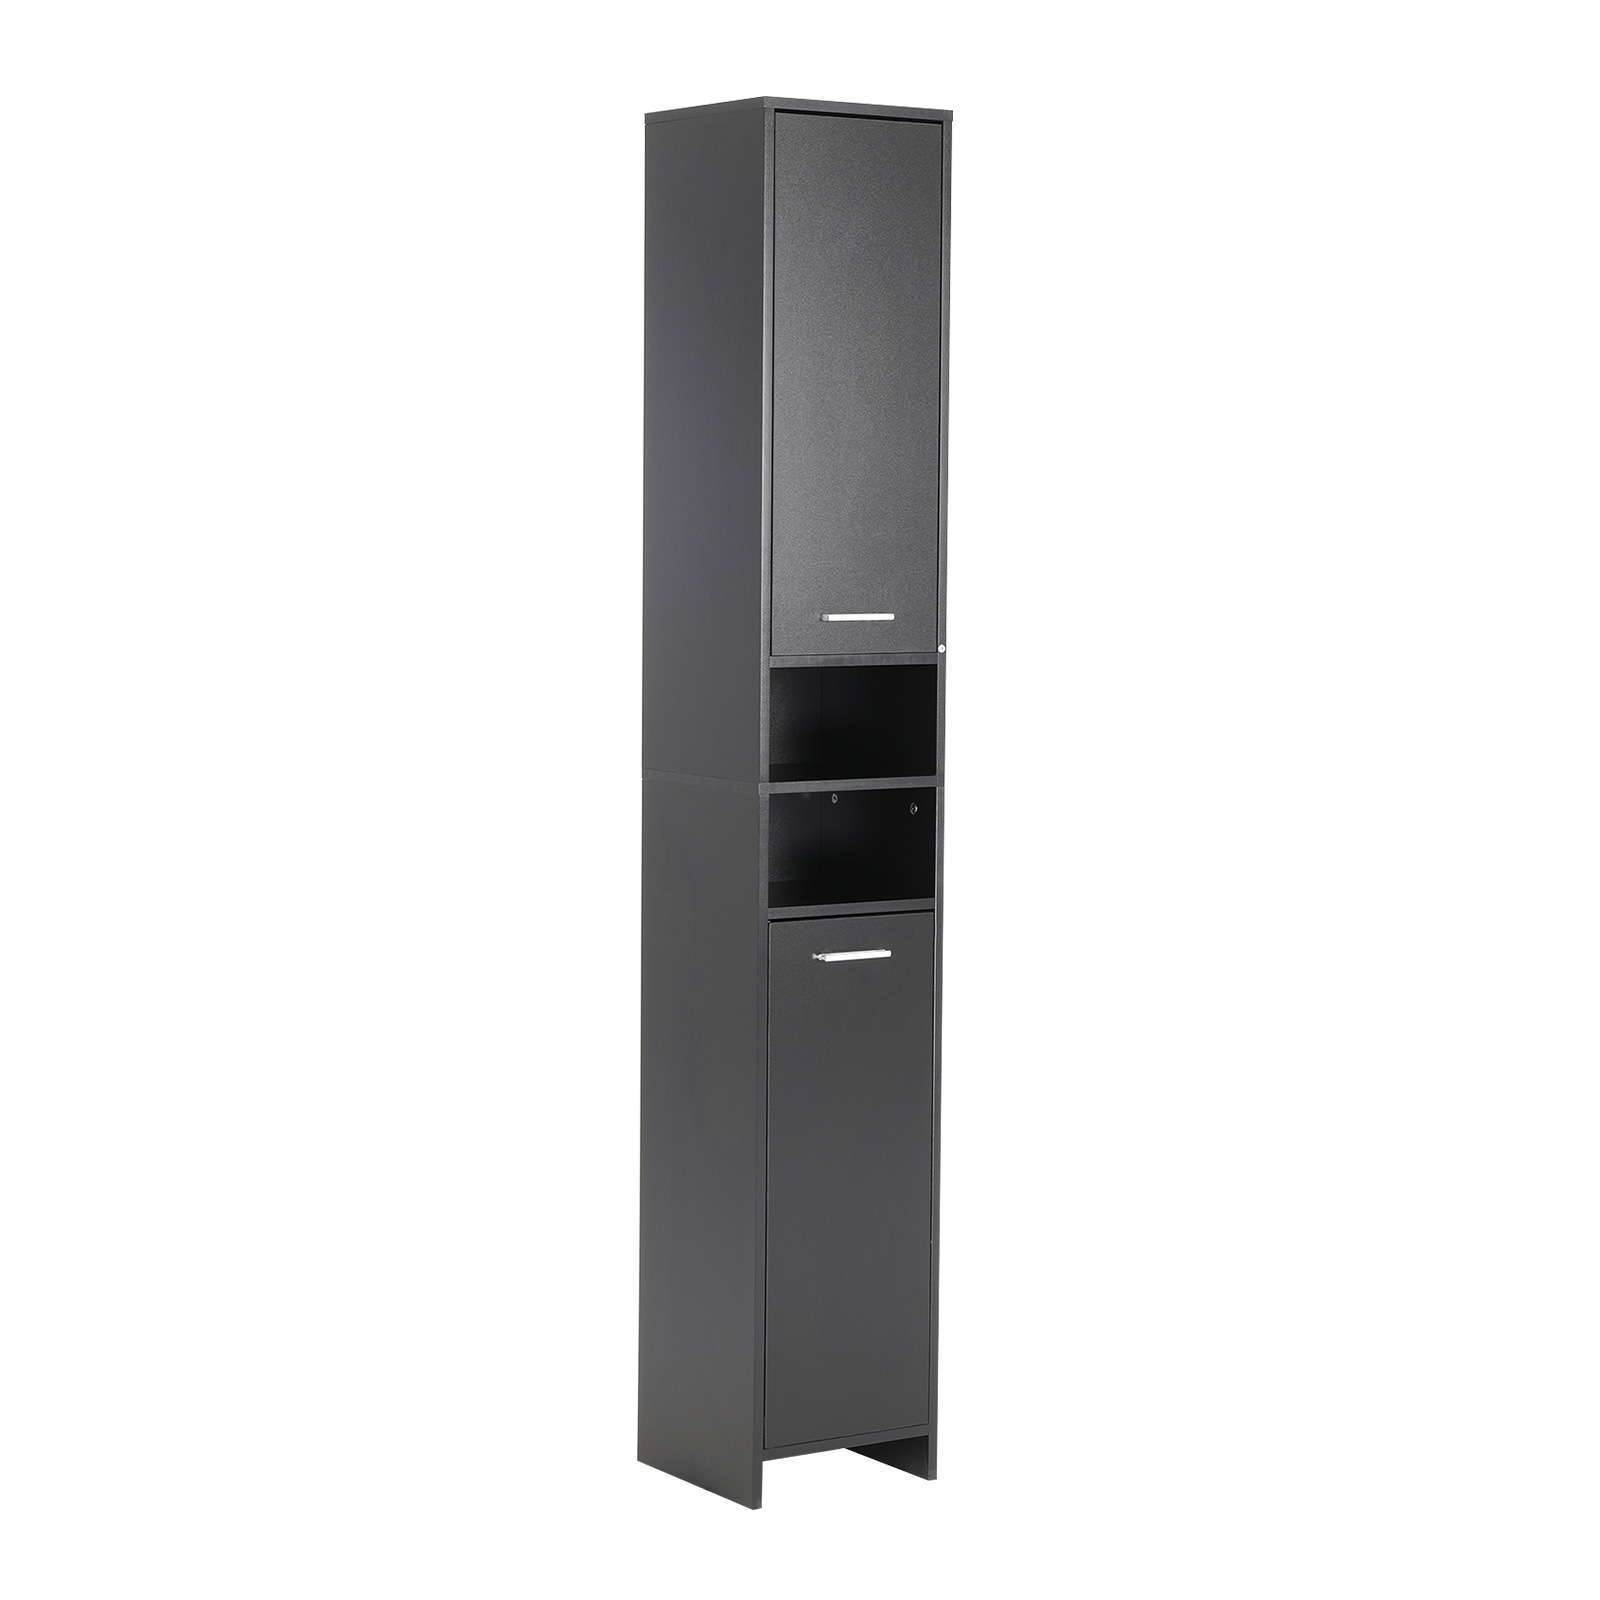 185cm Bathroom Storage Cabinet 8 Tier - BLACK